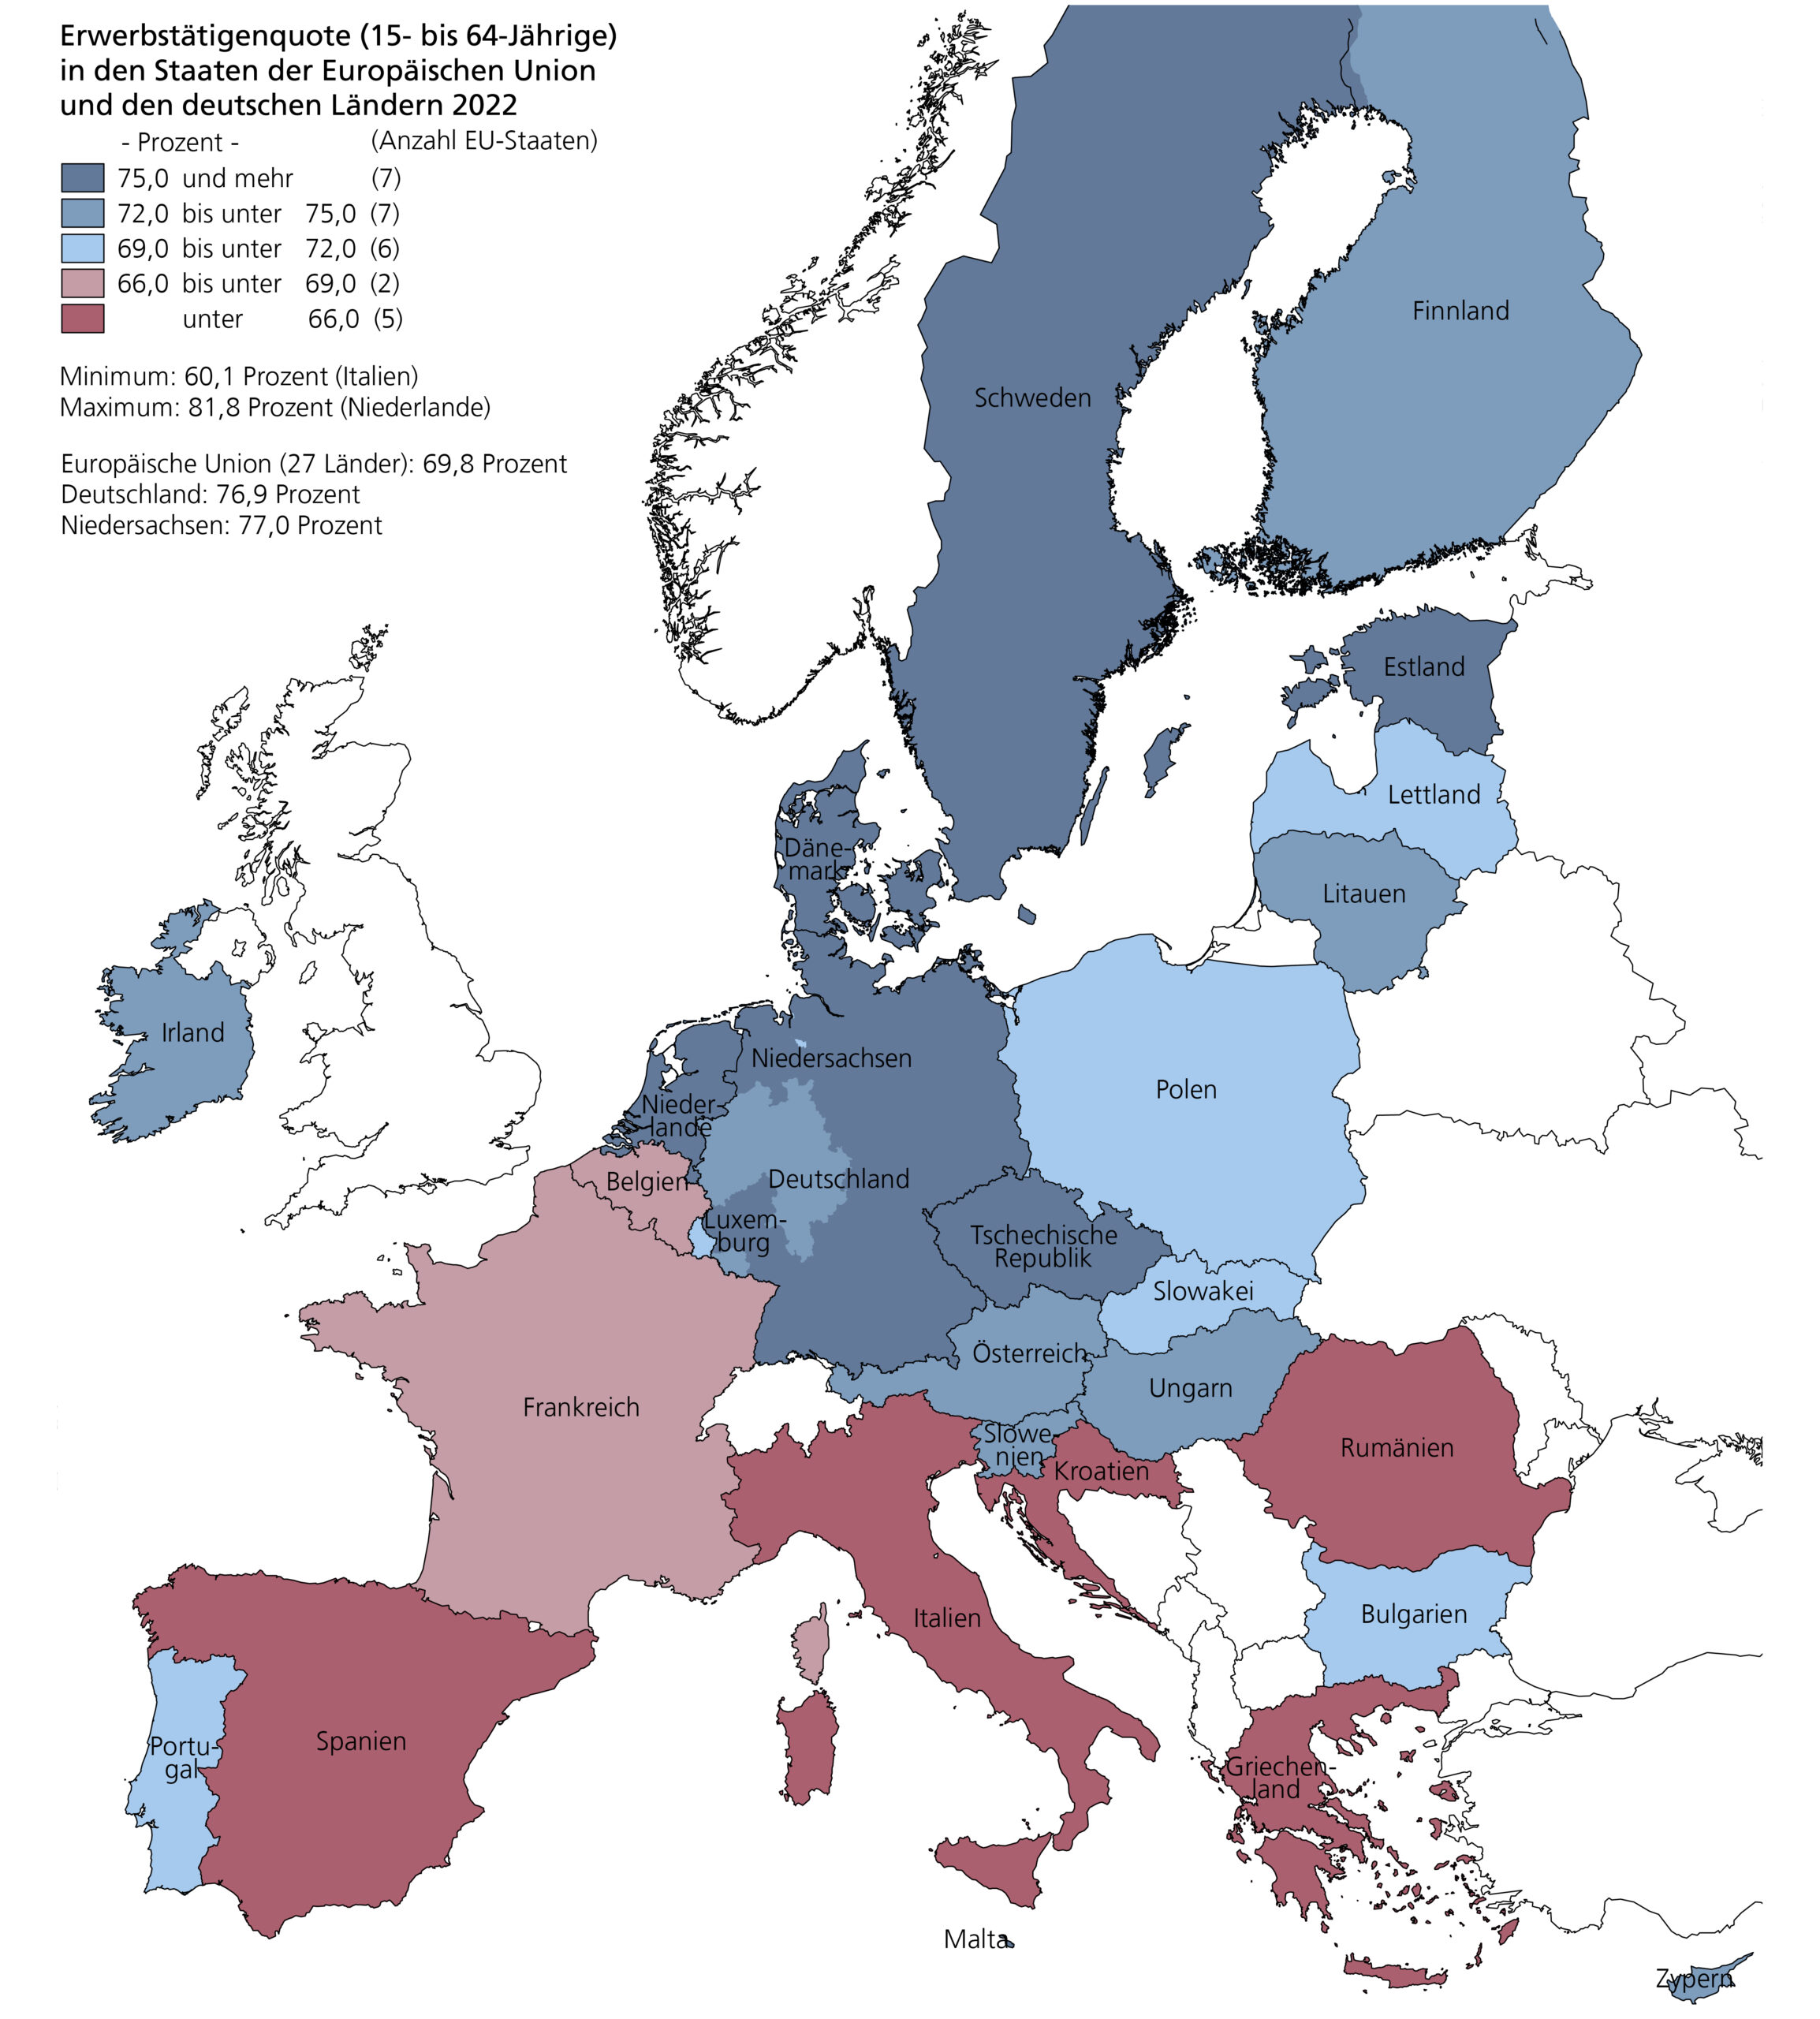 Erwerbstätigenquote (15- bis 64-Jährige) in den Staaten der Europäischen Union und den deutschen Ländern 2022 von unter 66,0 (z. B. Rumänien oder Spanien) bis zu 75 und mehr Prozent (z. B. Deutschland oder Schweden).